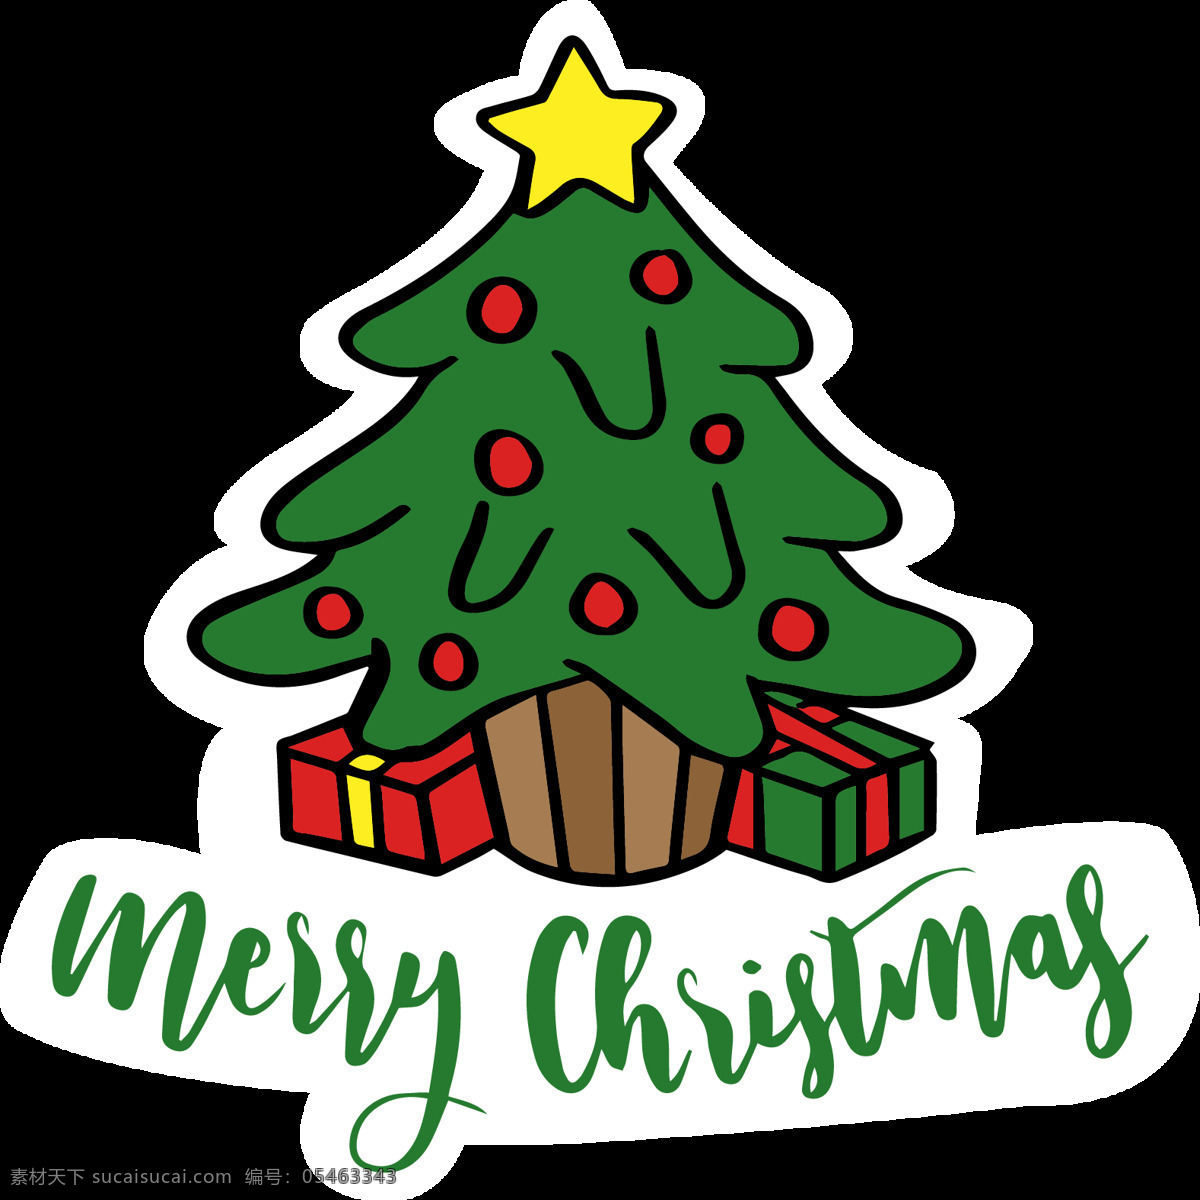 卡通 圣诞树 装饰 元素 圣诞元素下载 圣诞素材 卡通圣诞树 绿色圣诞树 圣诞帽 圣诞礼物 圣诞袜 节日元素 2017圣诞